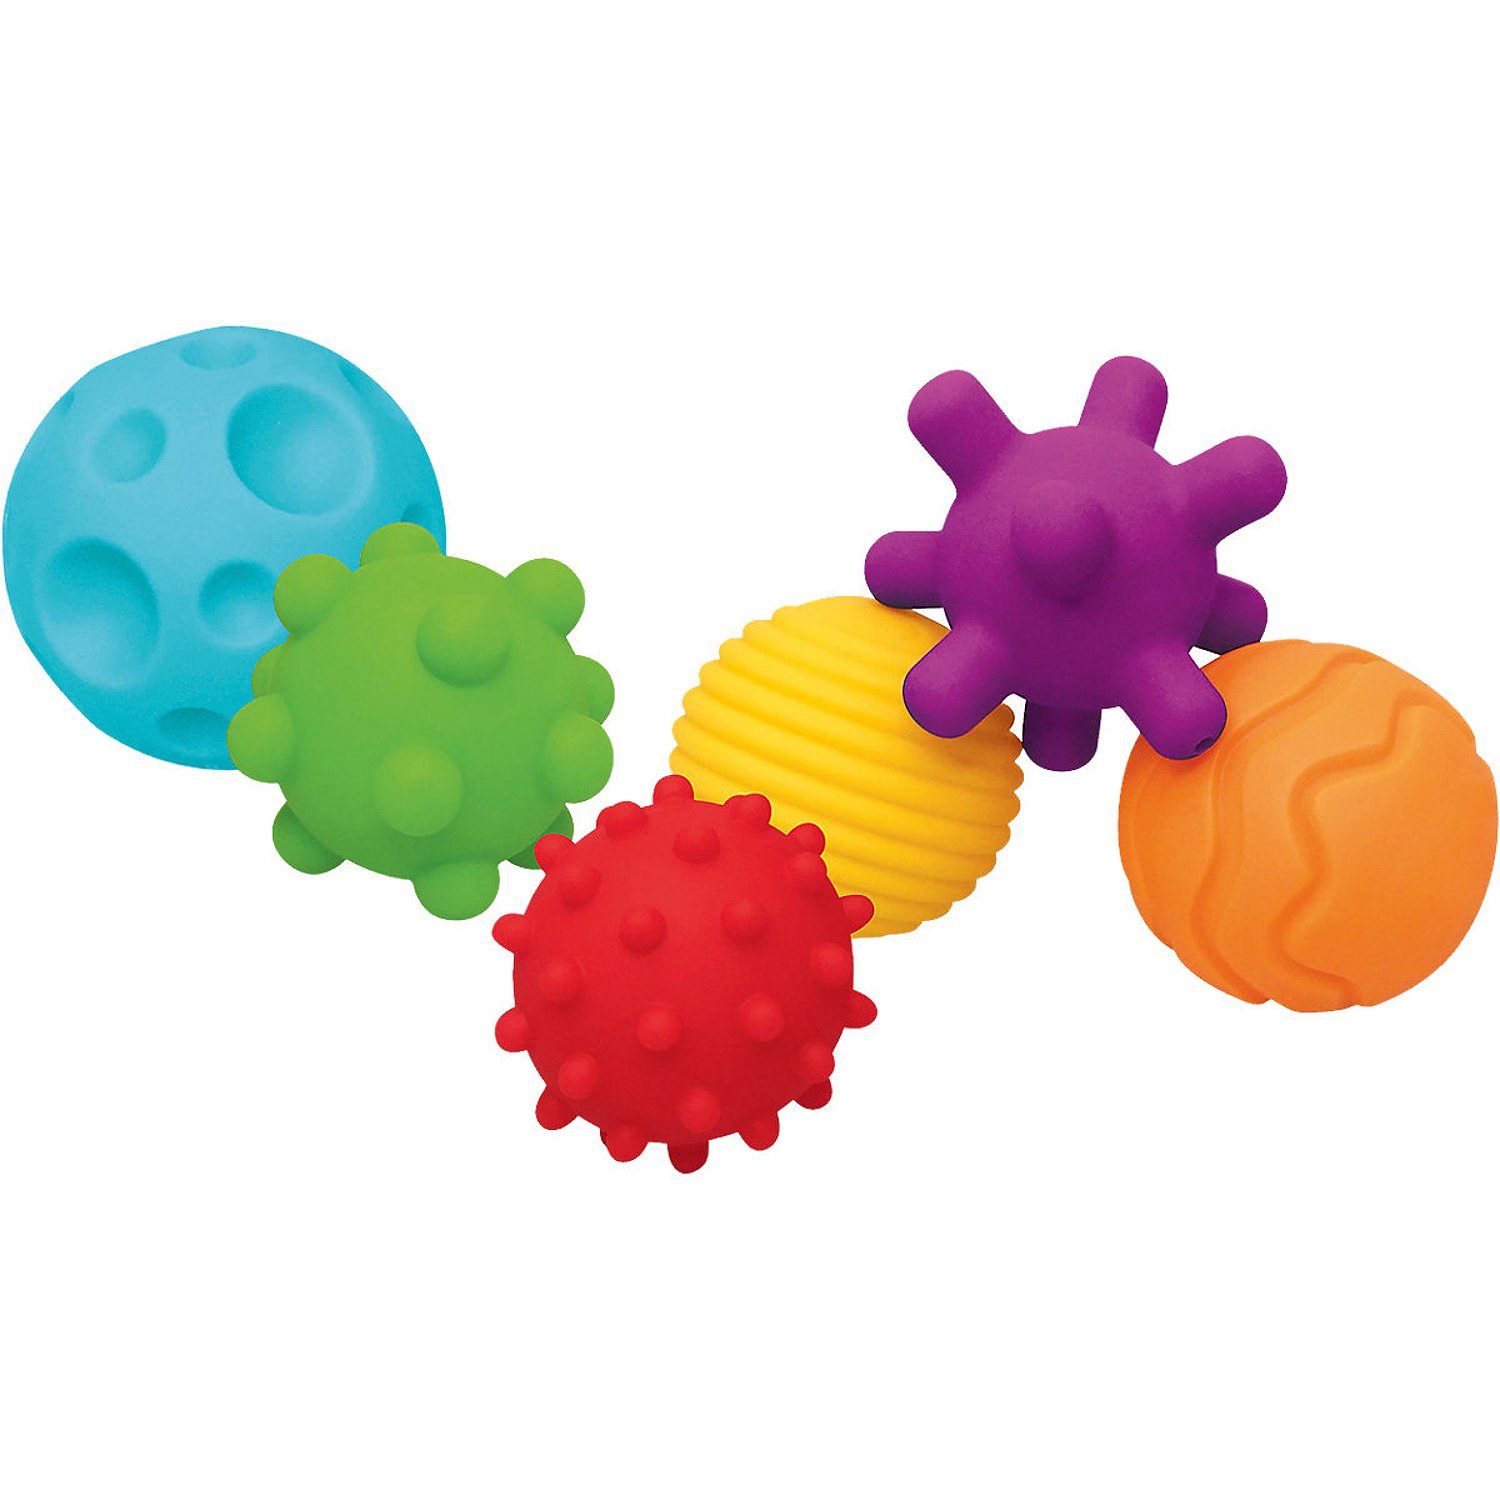 Развивающие игрушки Тактильные мячики Sensory - фото